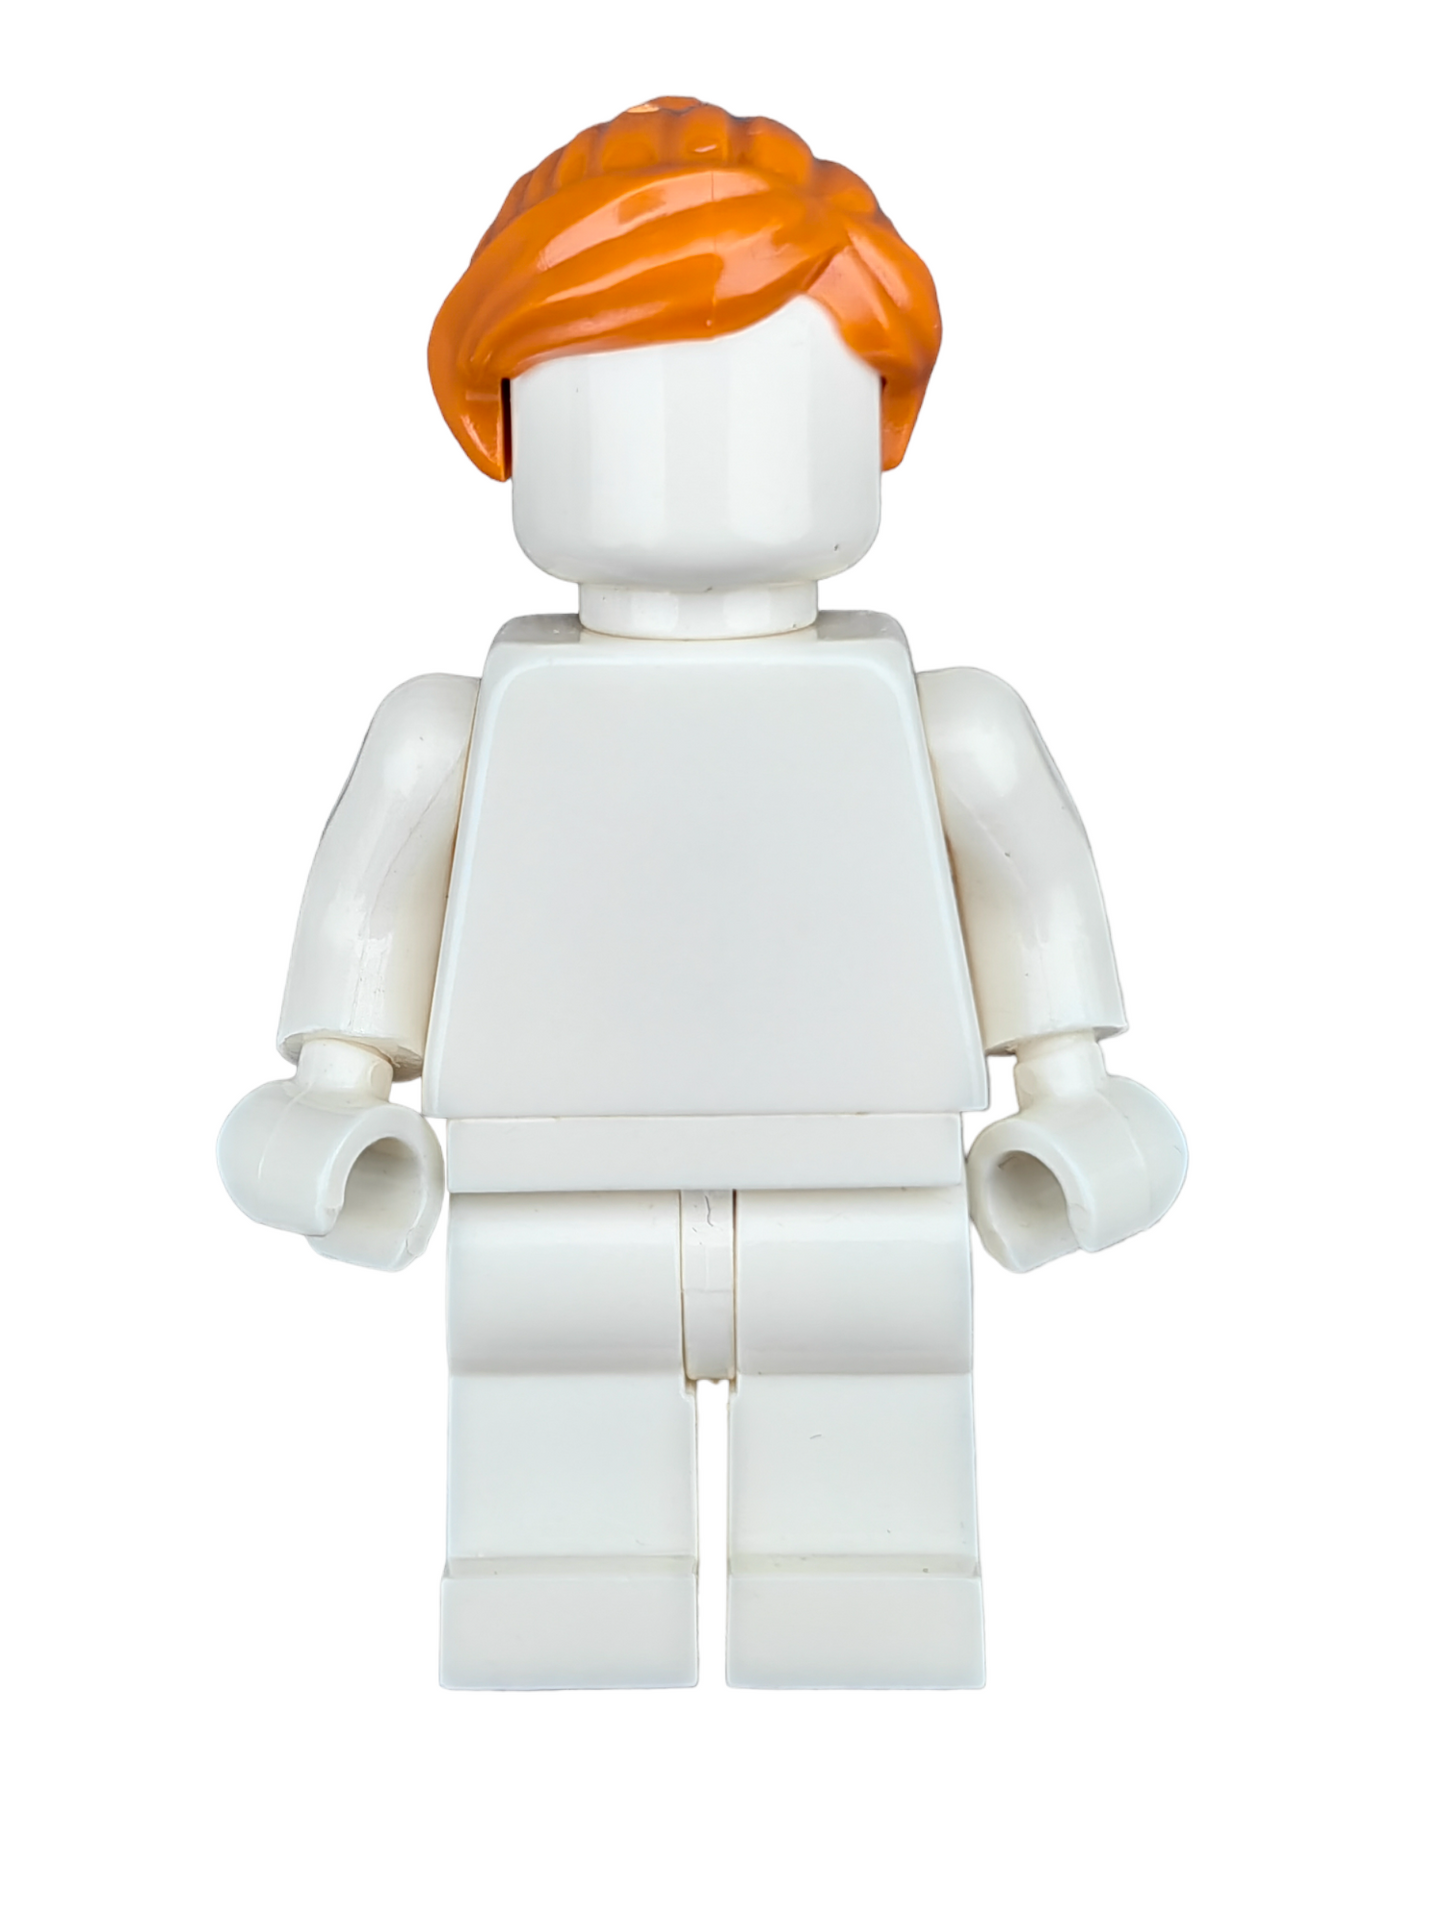 LEGO Wig, Ginger Hair Ponytail and Swept Fringe - UB1199